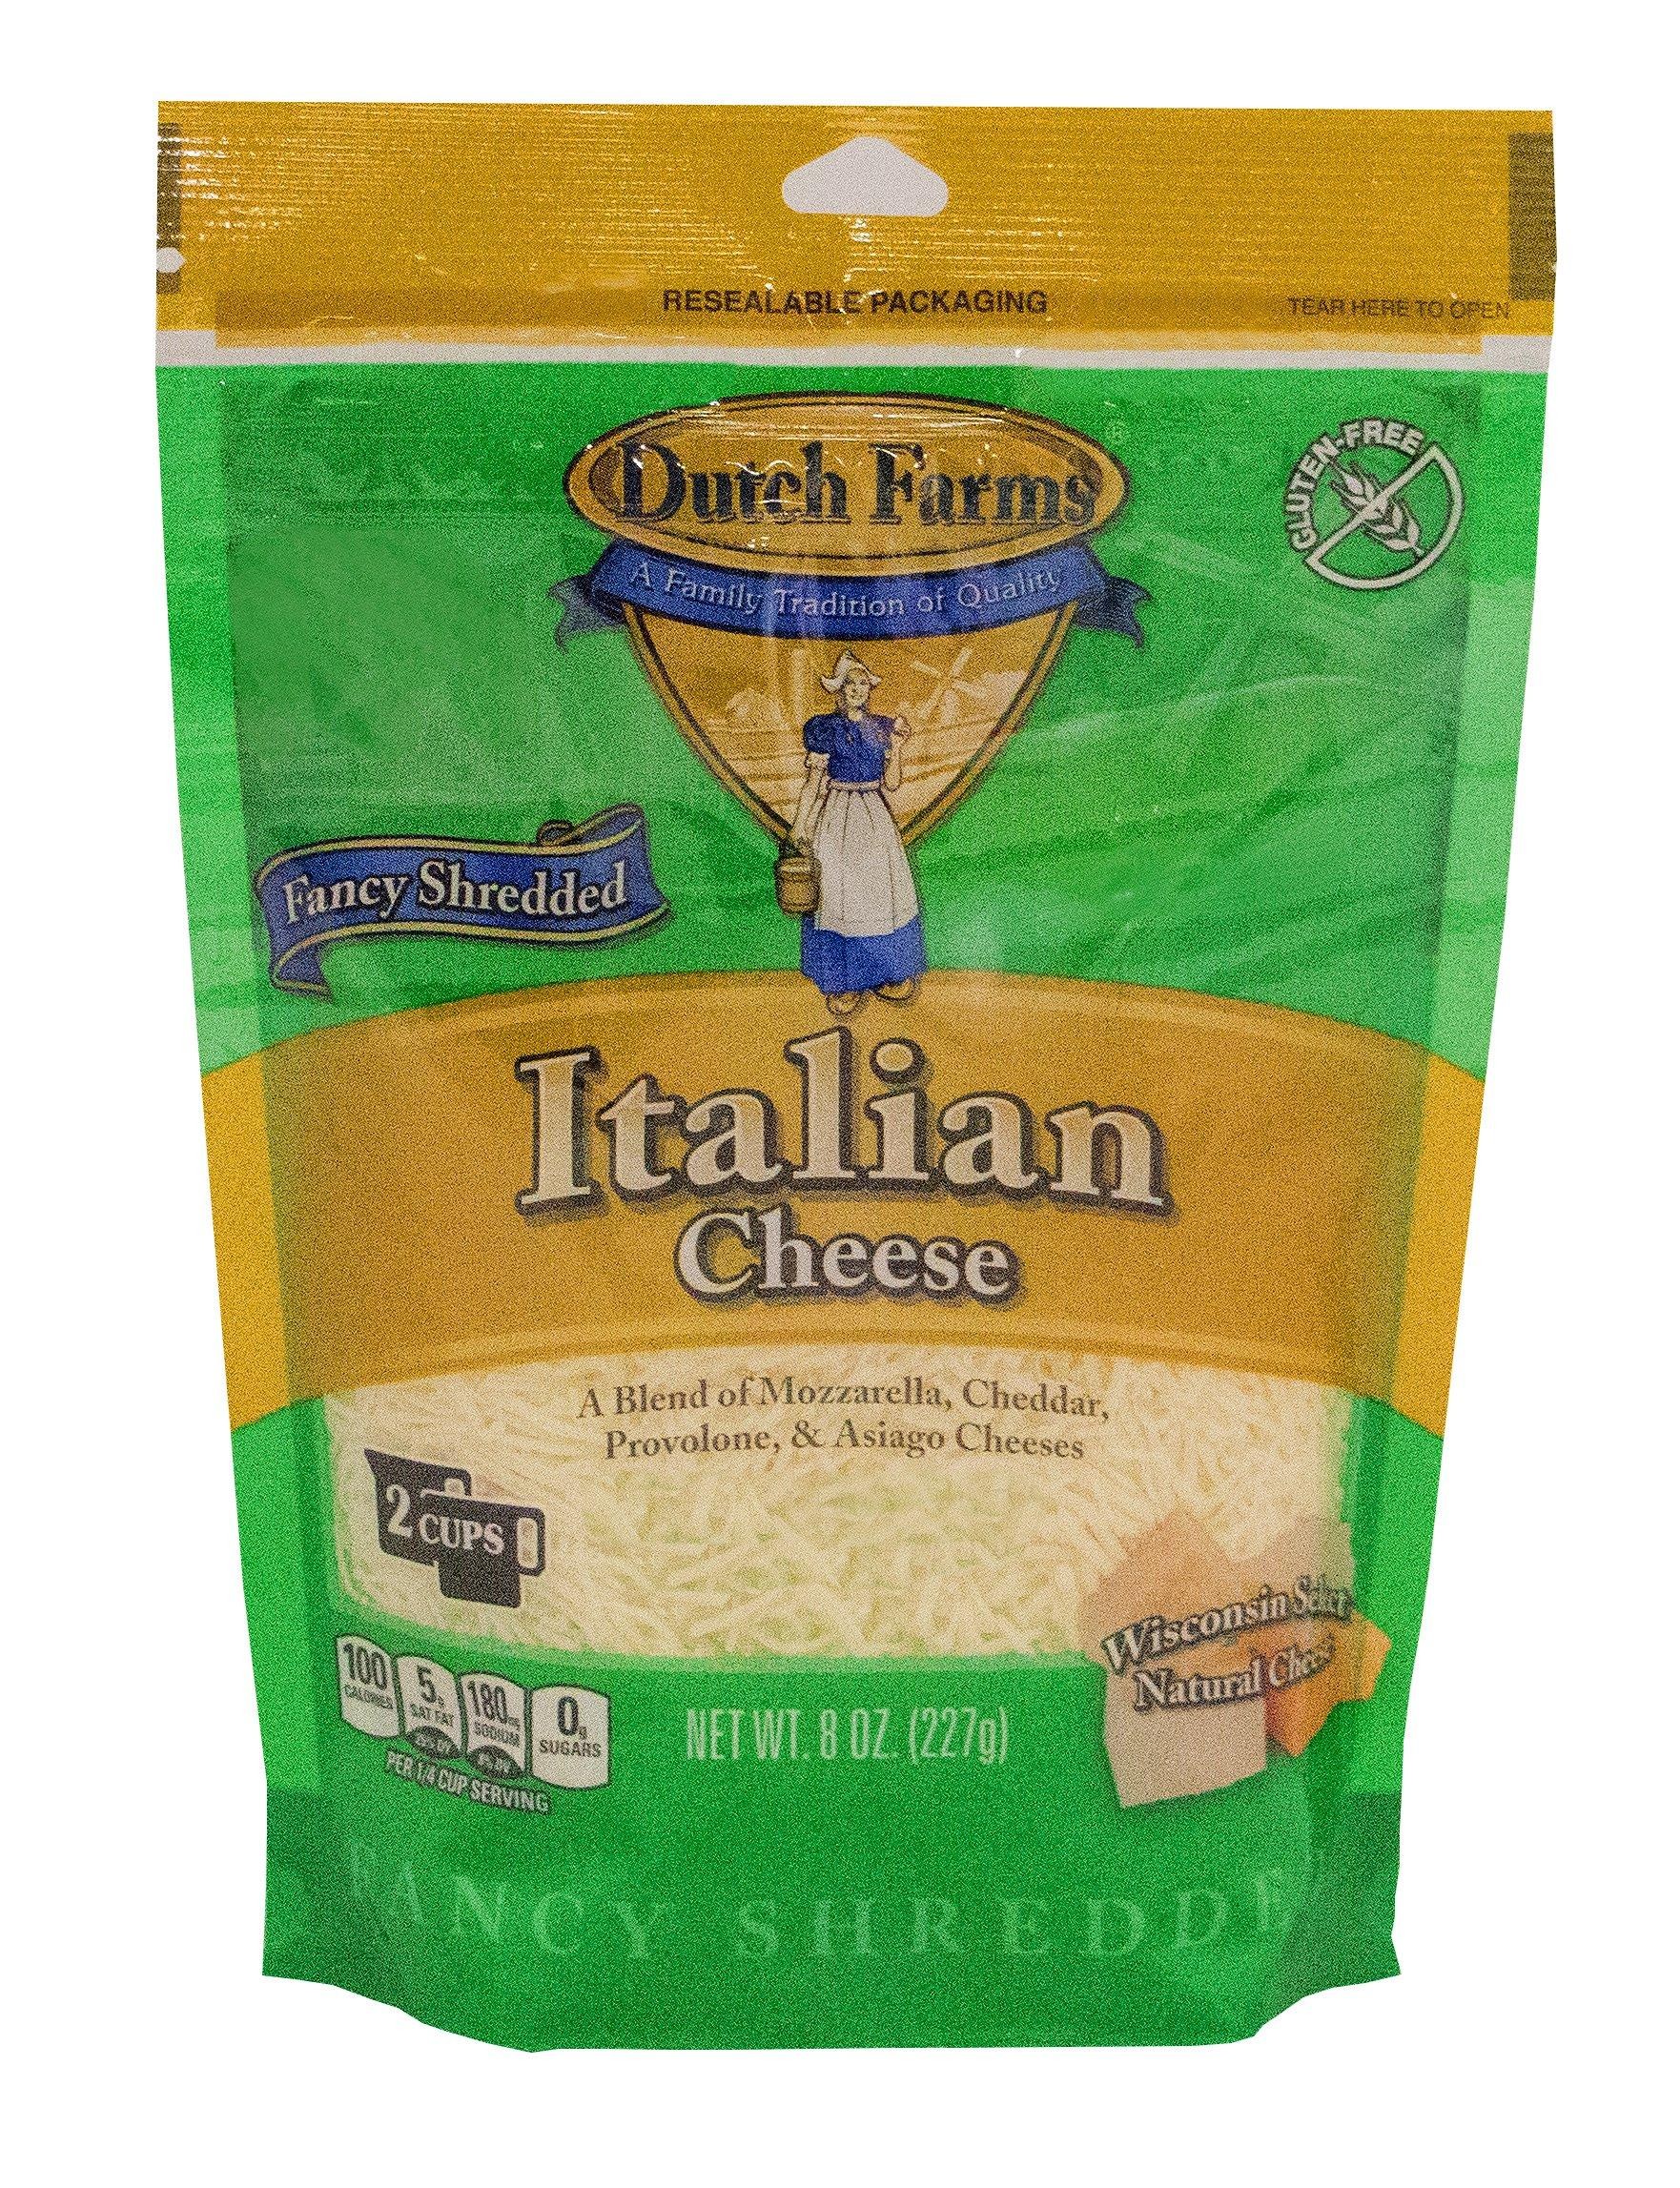 Dutch Farms 4 Cheese Blend Fancy Shredded Italian Cheese - 8 oz